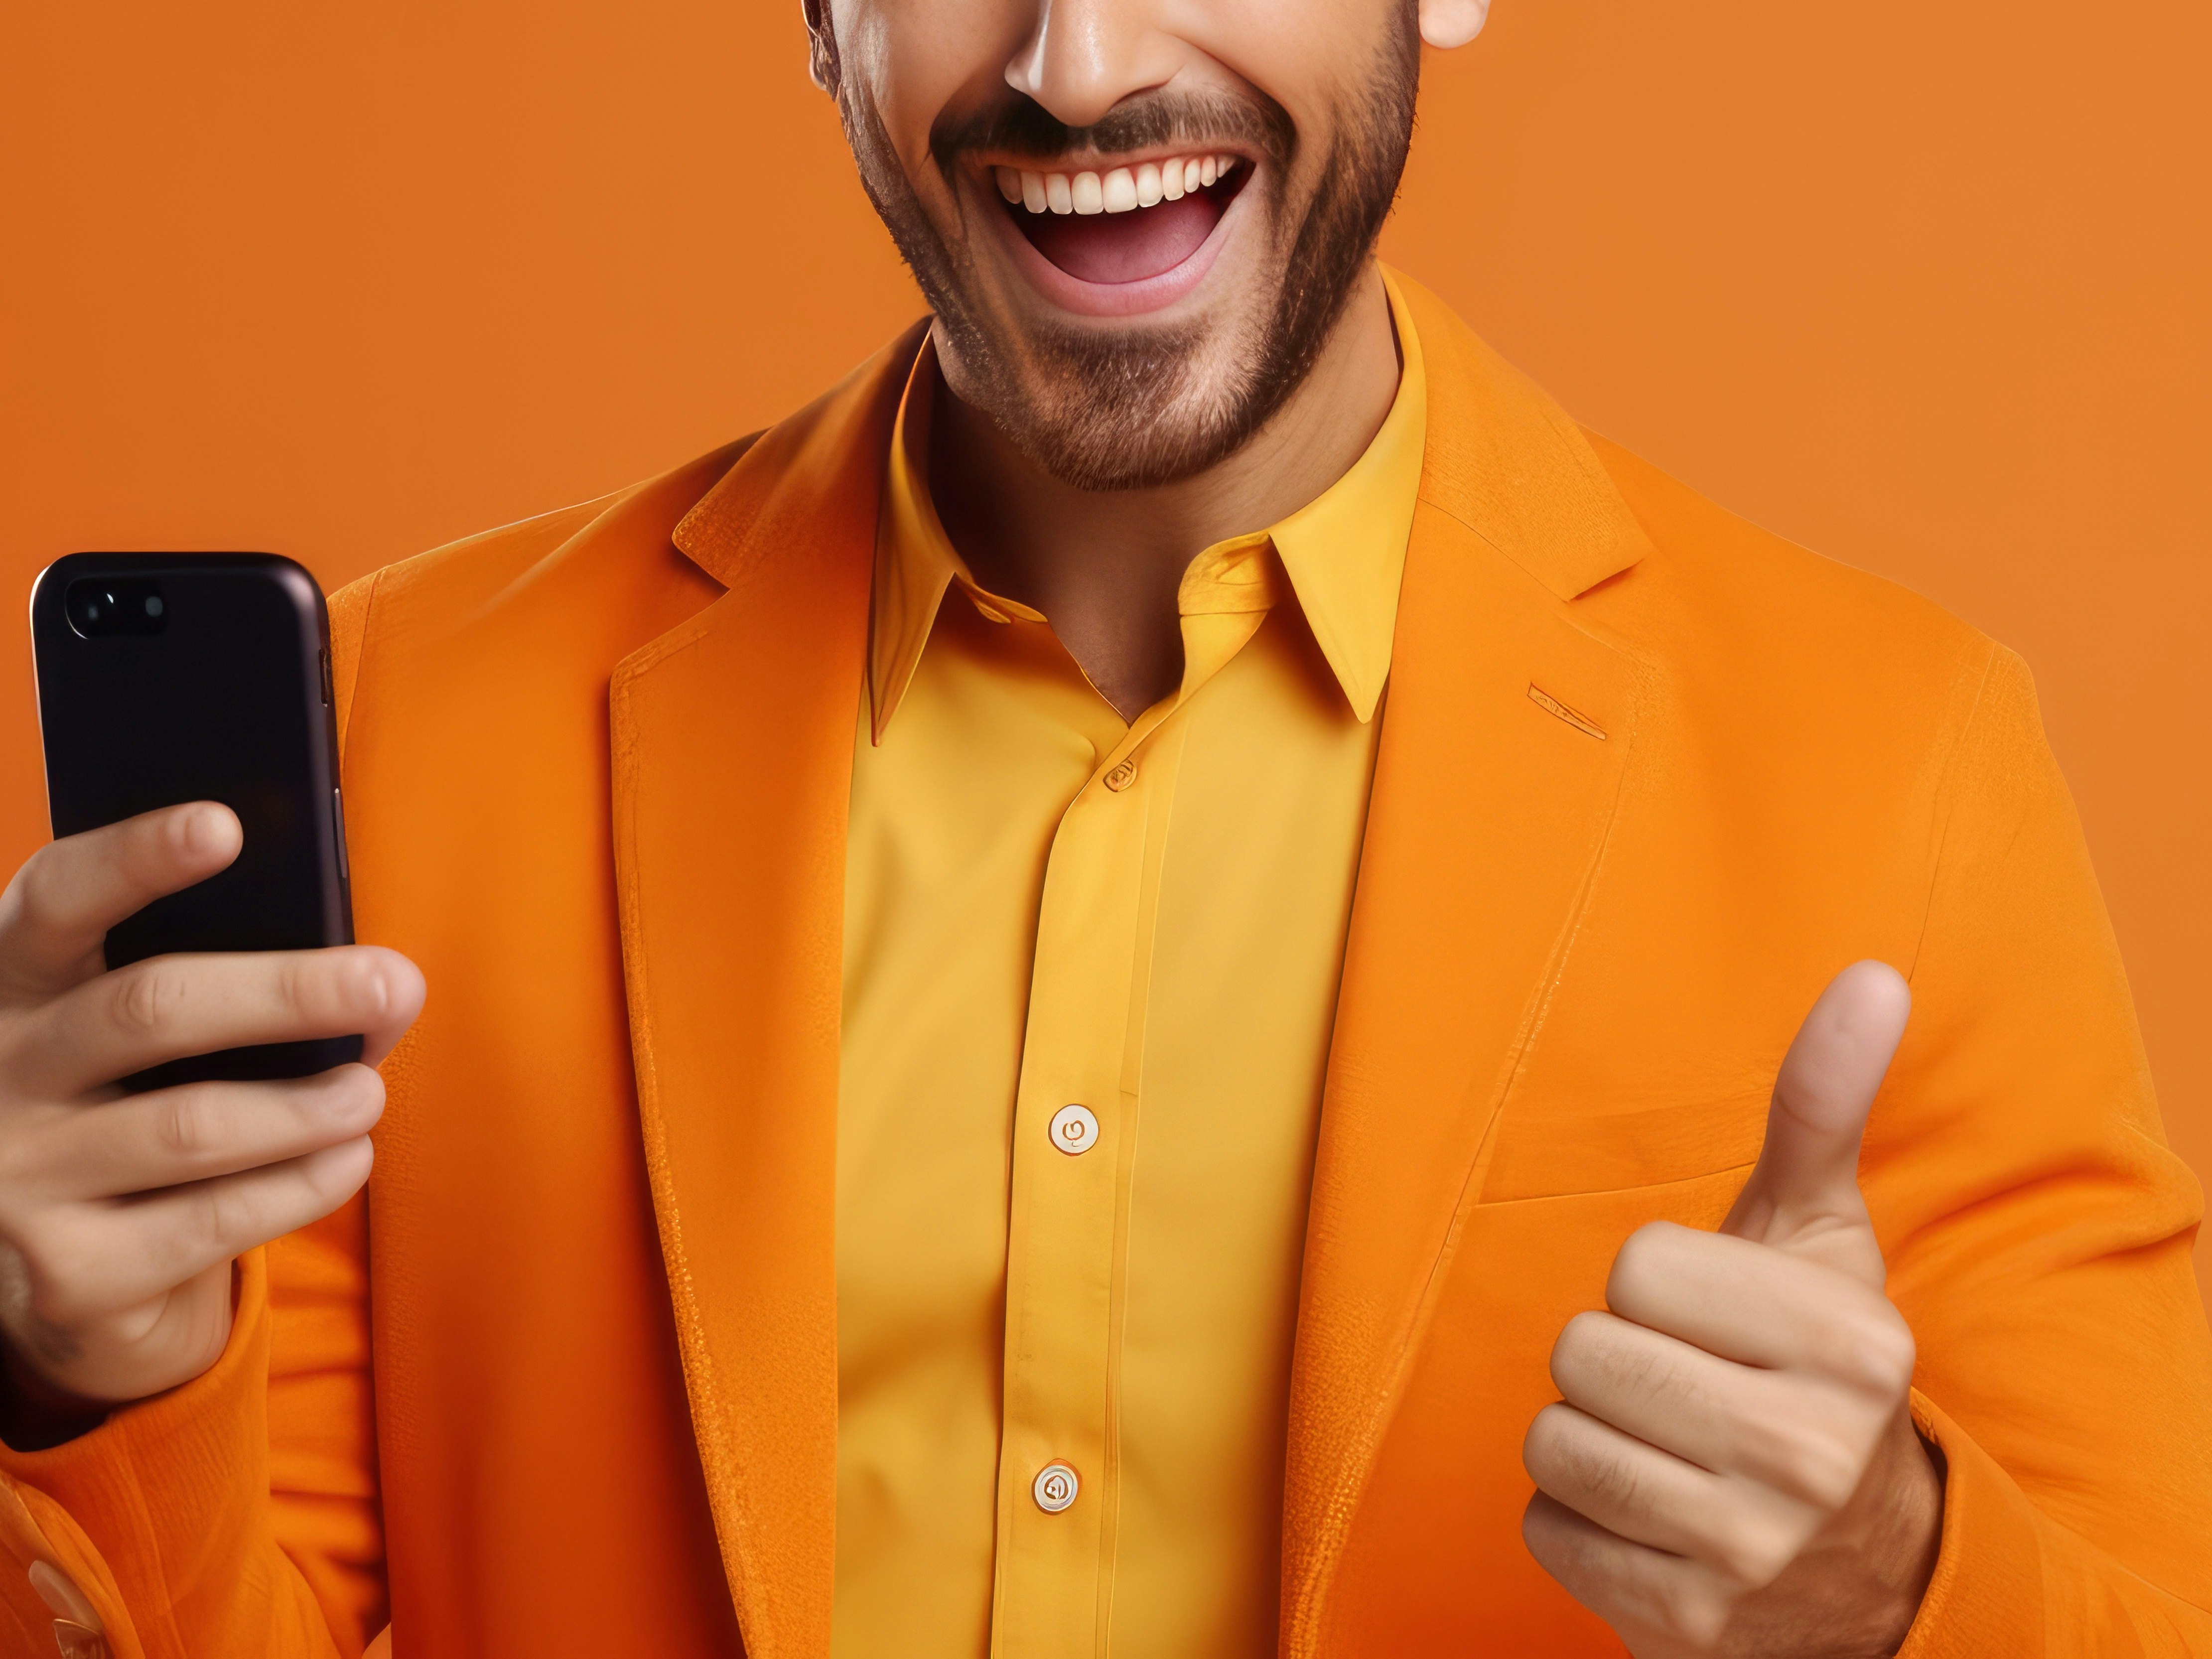 Mann i oransje jakke og oransje skjorte. Tommel opp og en telefon i den andre hånden